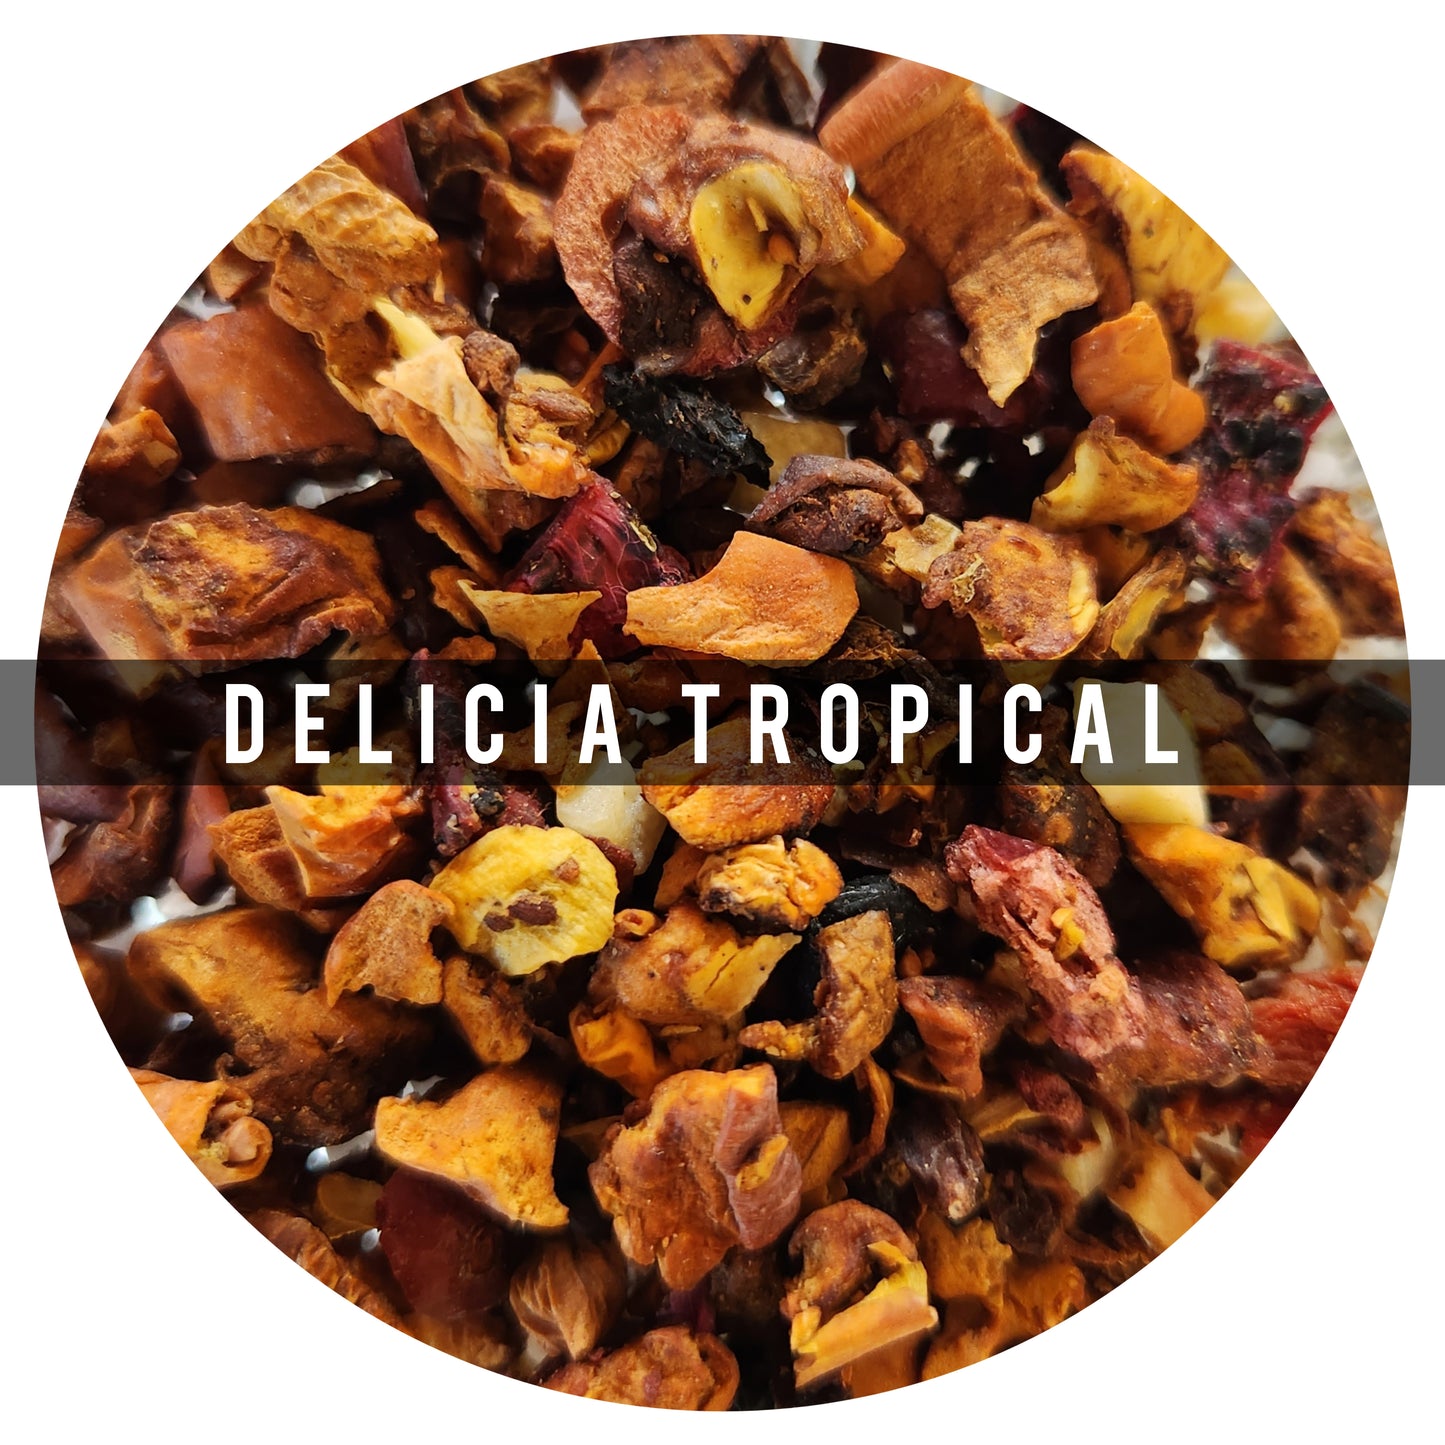 *Delicia Tropical 100g Lps.305 Es una tisana 100% afrutada y dulce
Ingredientes: Pitaya, Bayas de Espino Amarillo, Moras, Bayas de Goji, Kiwi, Piña, Papaya, Arándanos